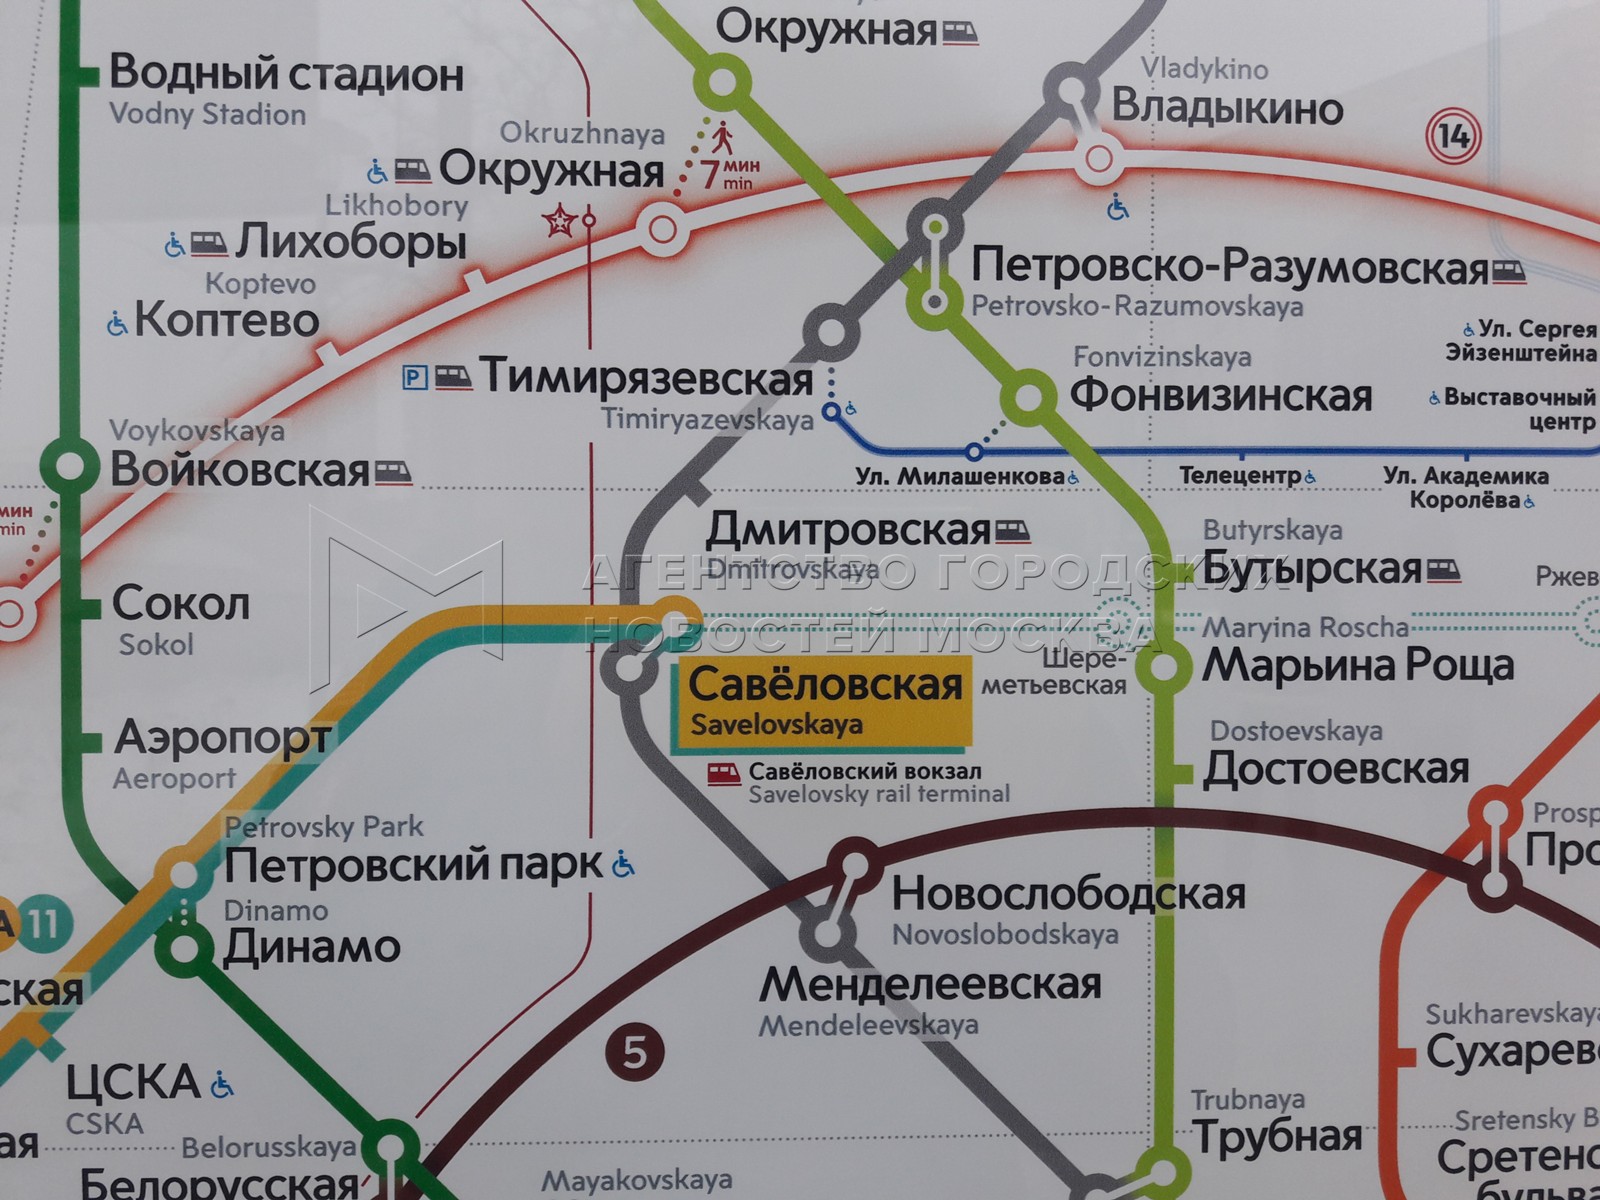 Савеловский вокзал как доехать на метро